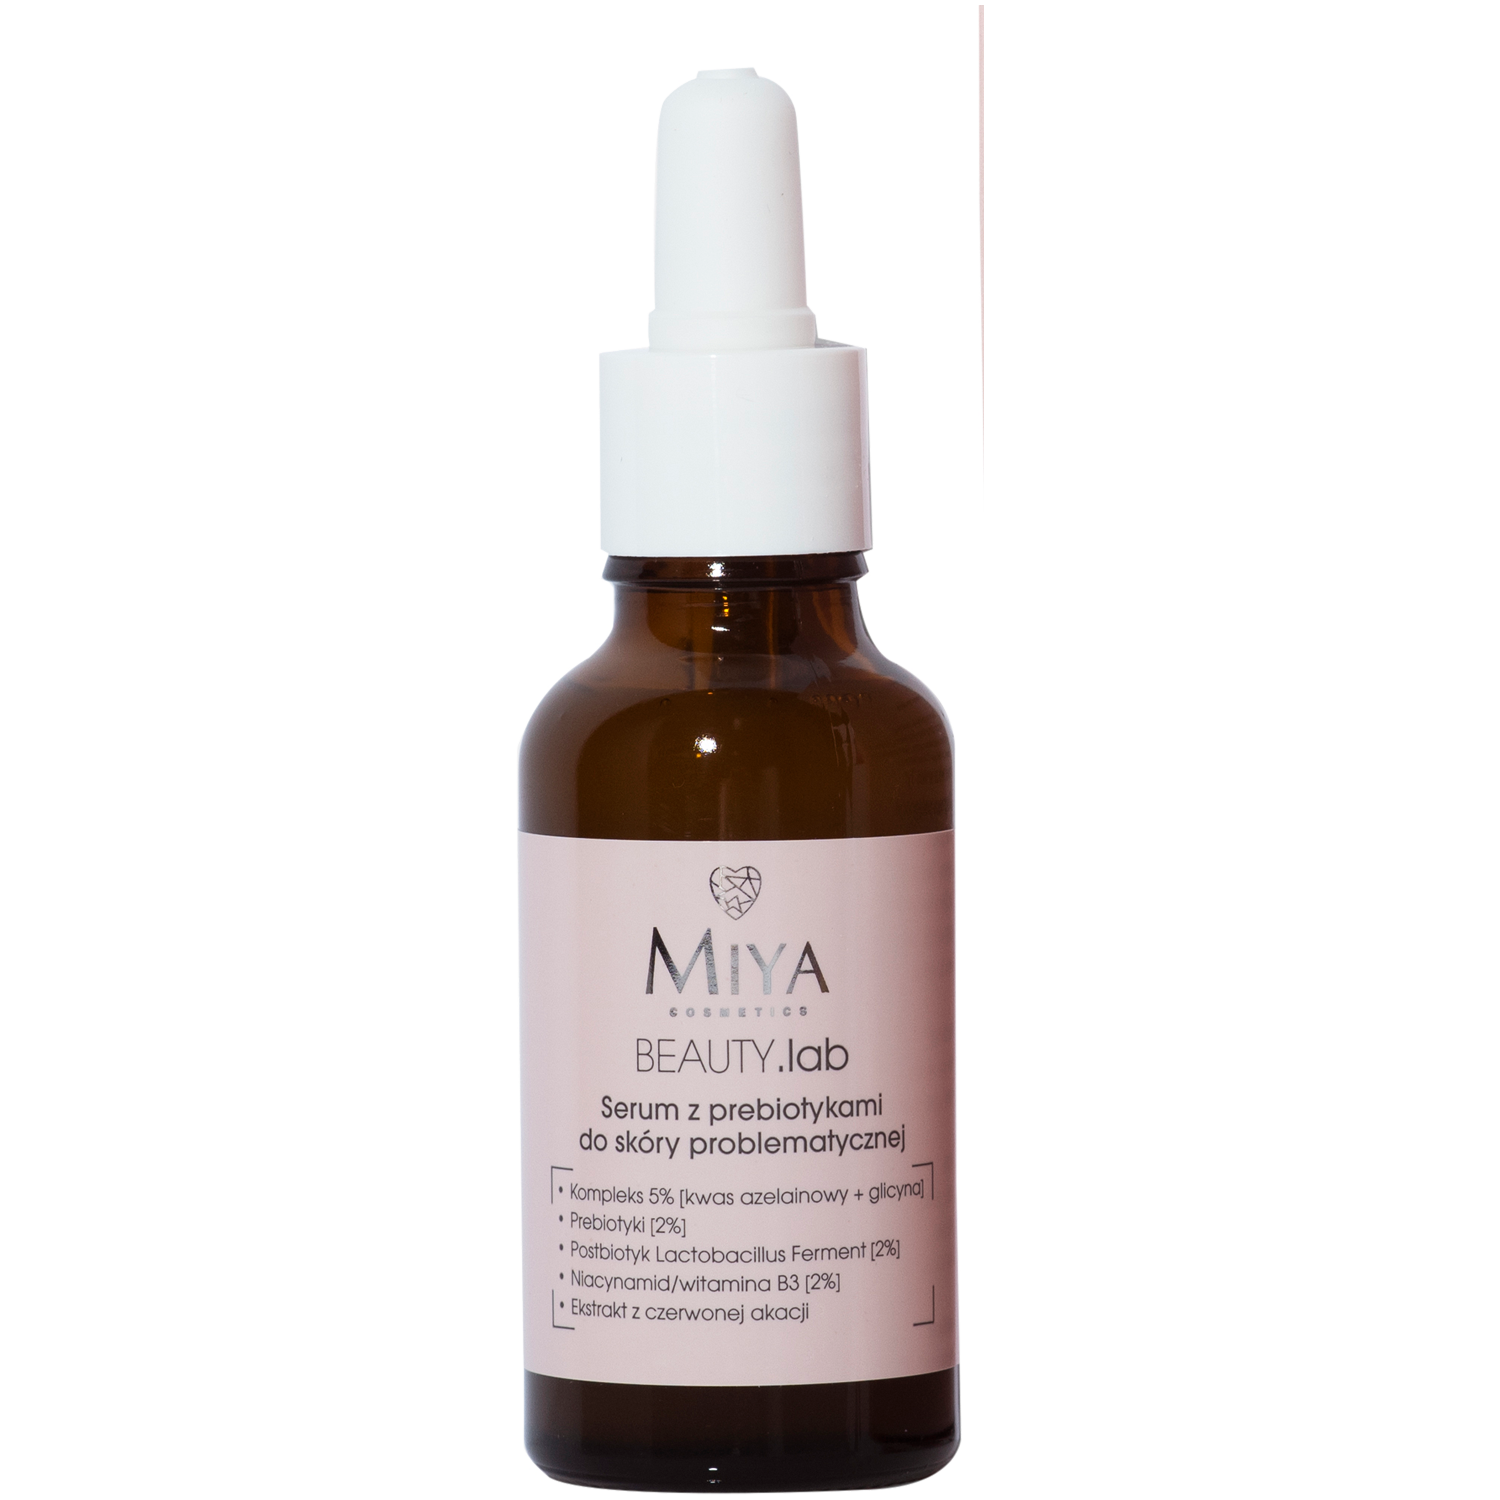 Miya Cosmetics BEAUTY.lab serum z prebiotykiem do twarzy, 30 ml | hebe.pl